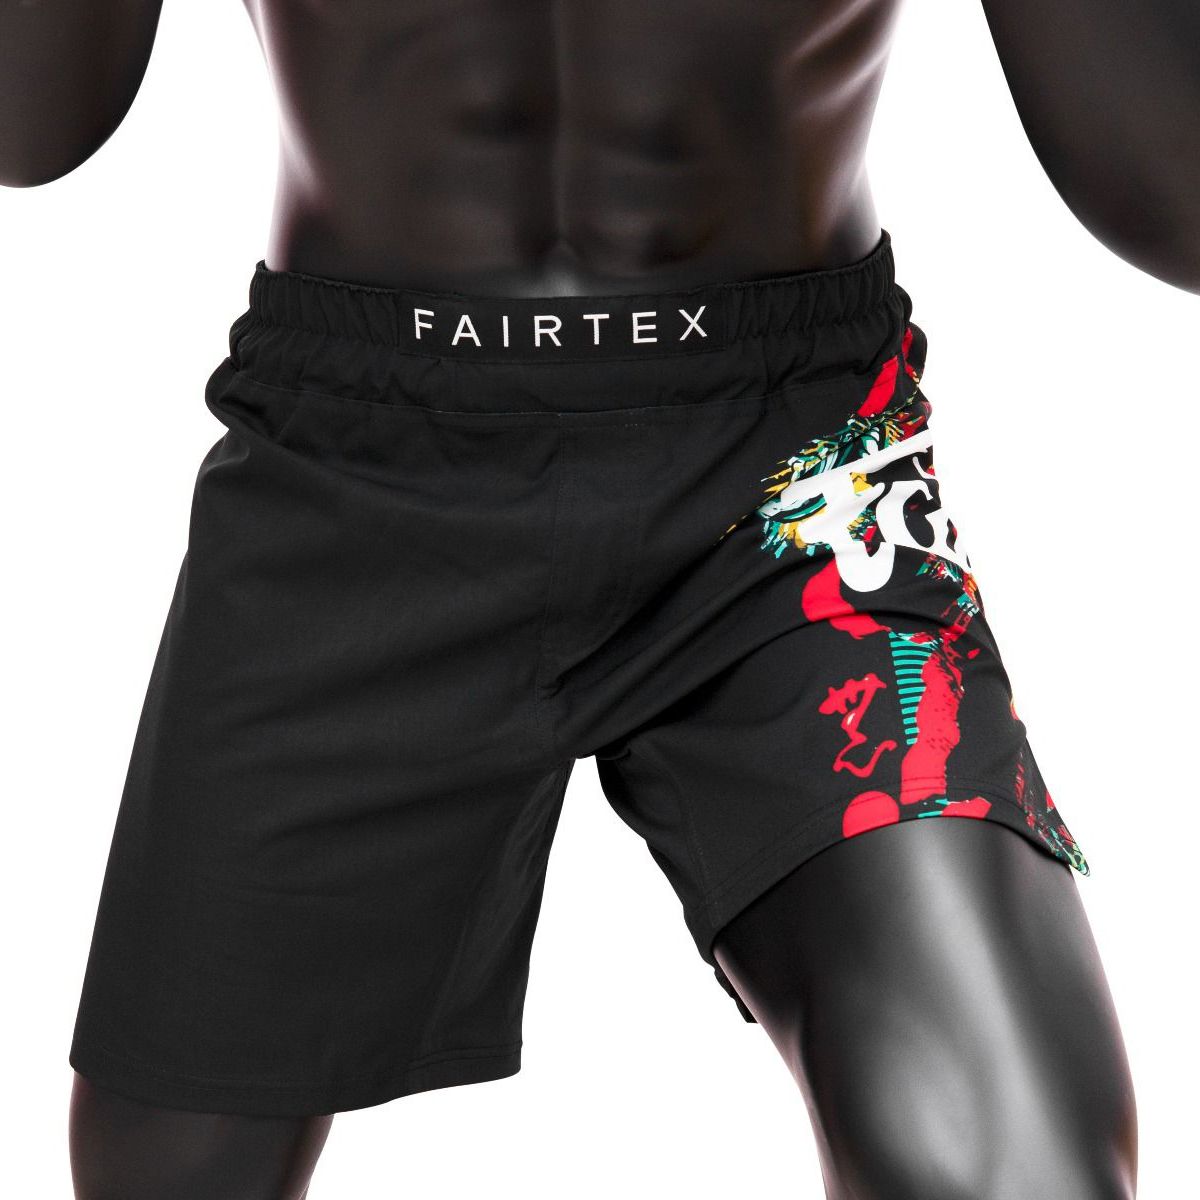 Shorts para MMA Fairtex AB13 Wild - Poliester/Spandex